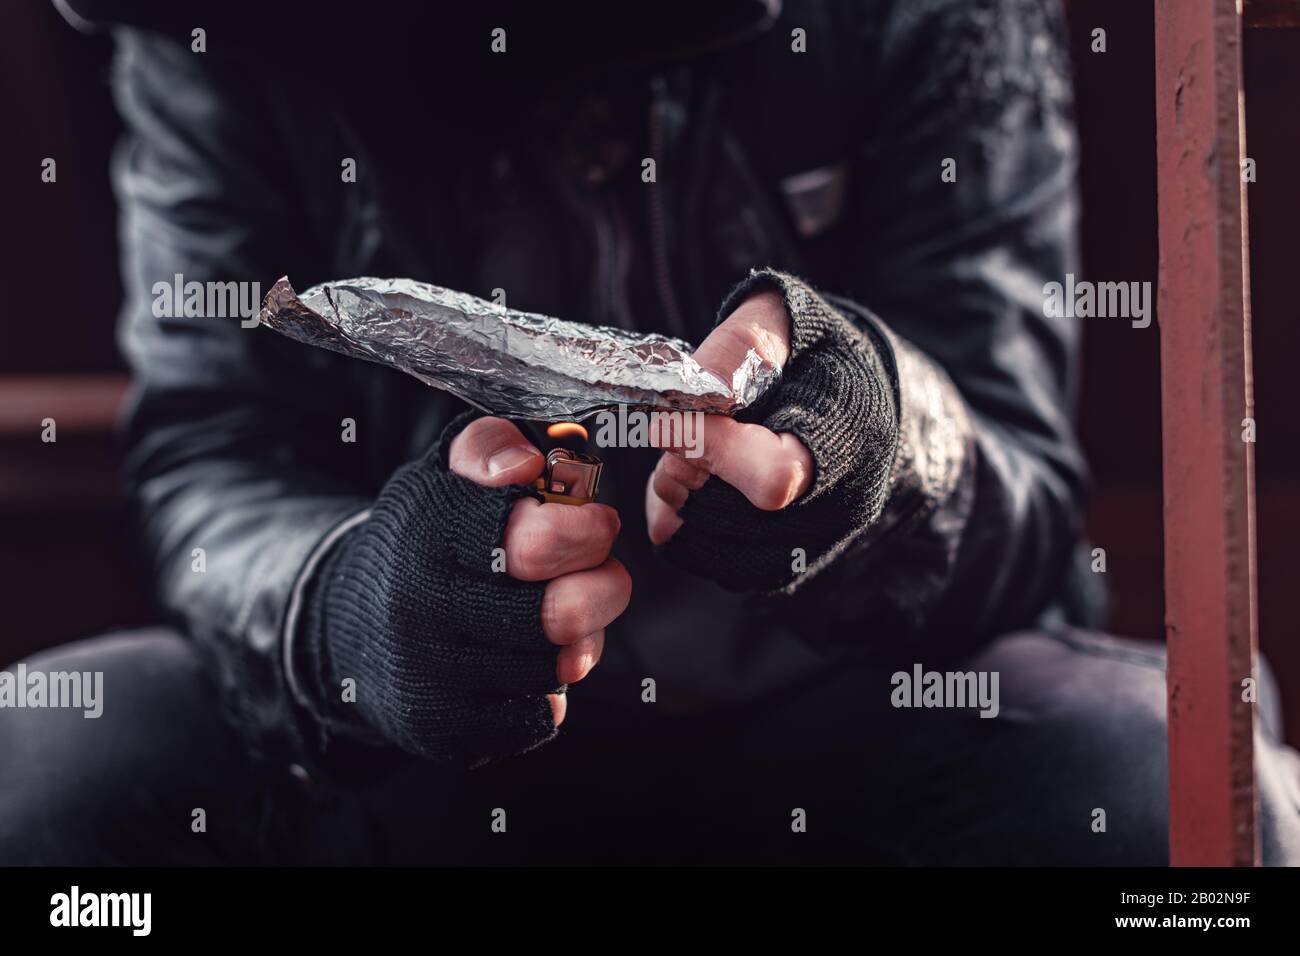 Toxicomane fumeurs opium sur du papier d'aluminium, aka chasing the dragon, Close up of hands with selective focus Banque D'Images